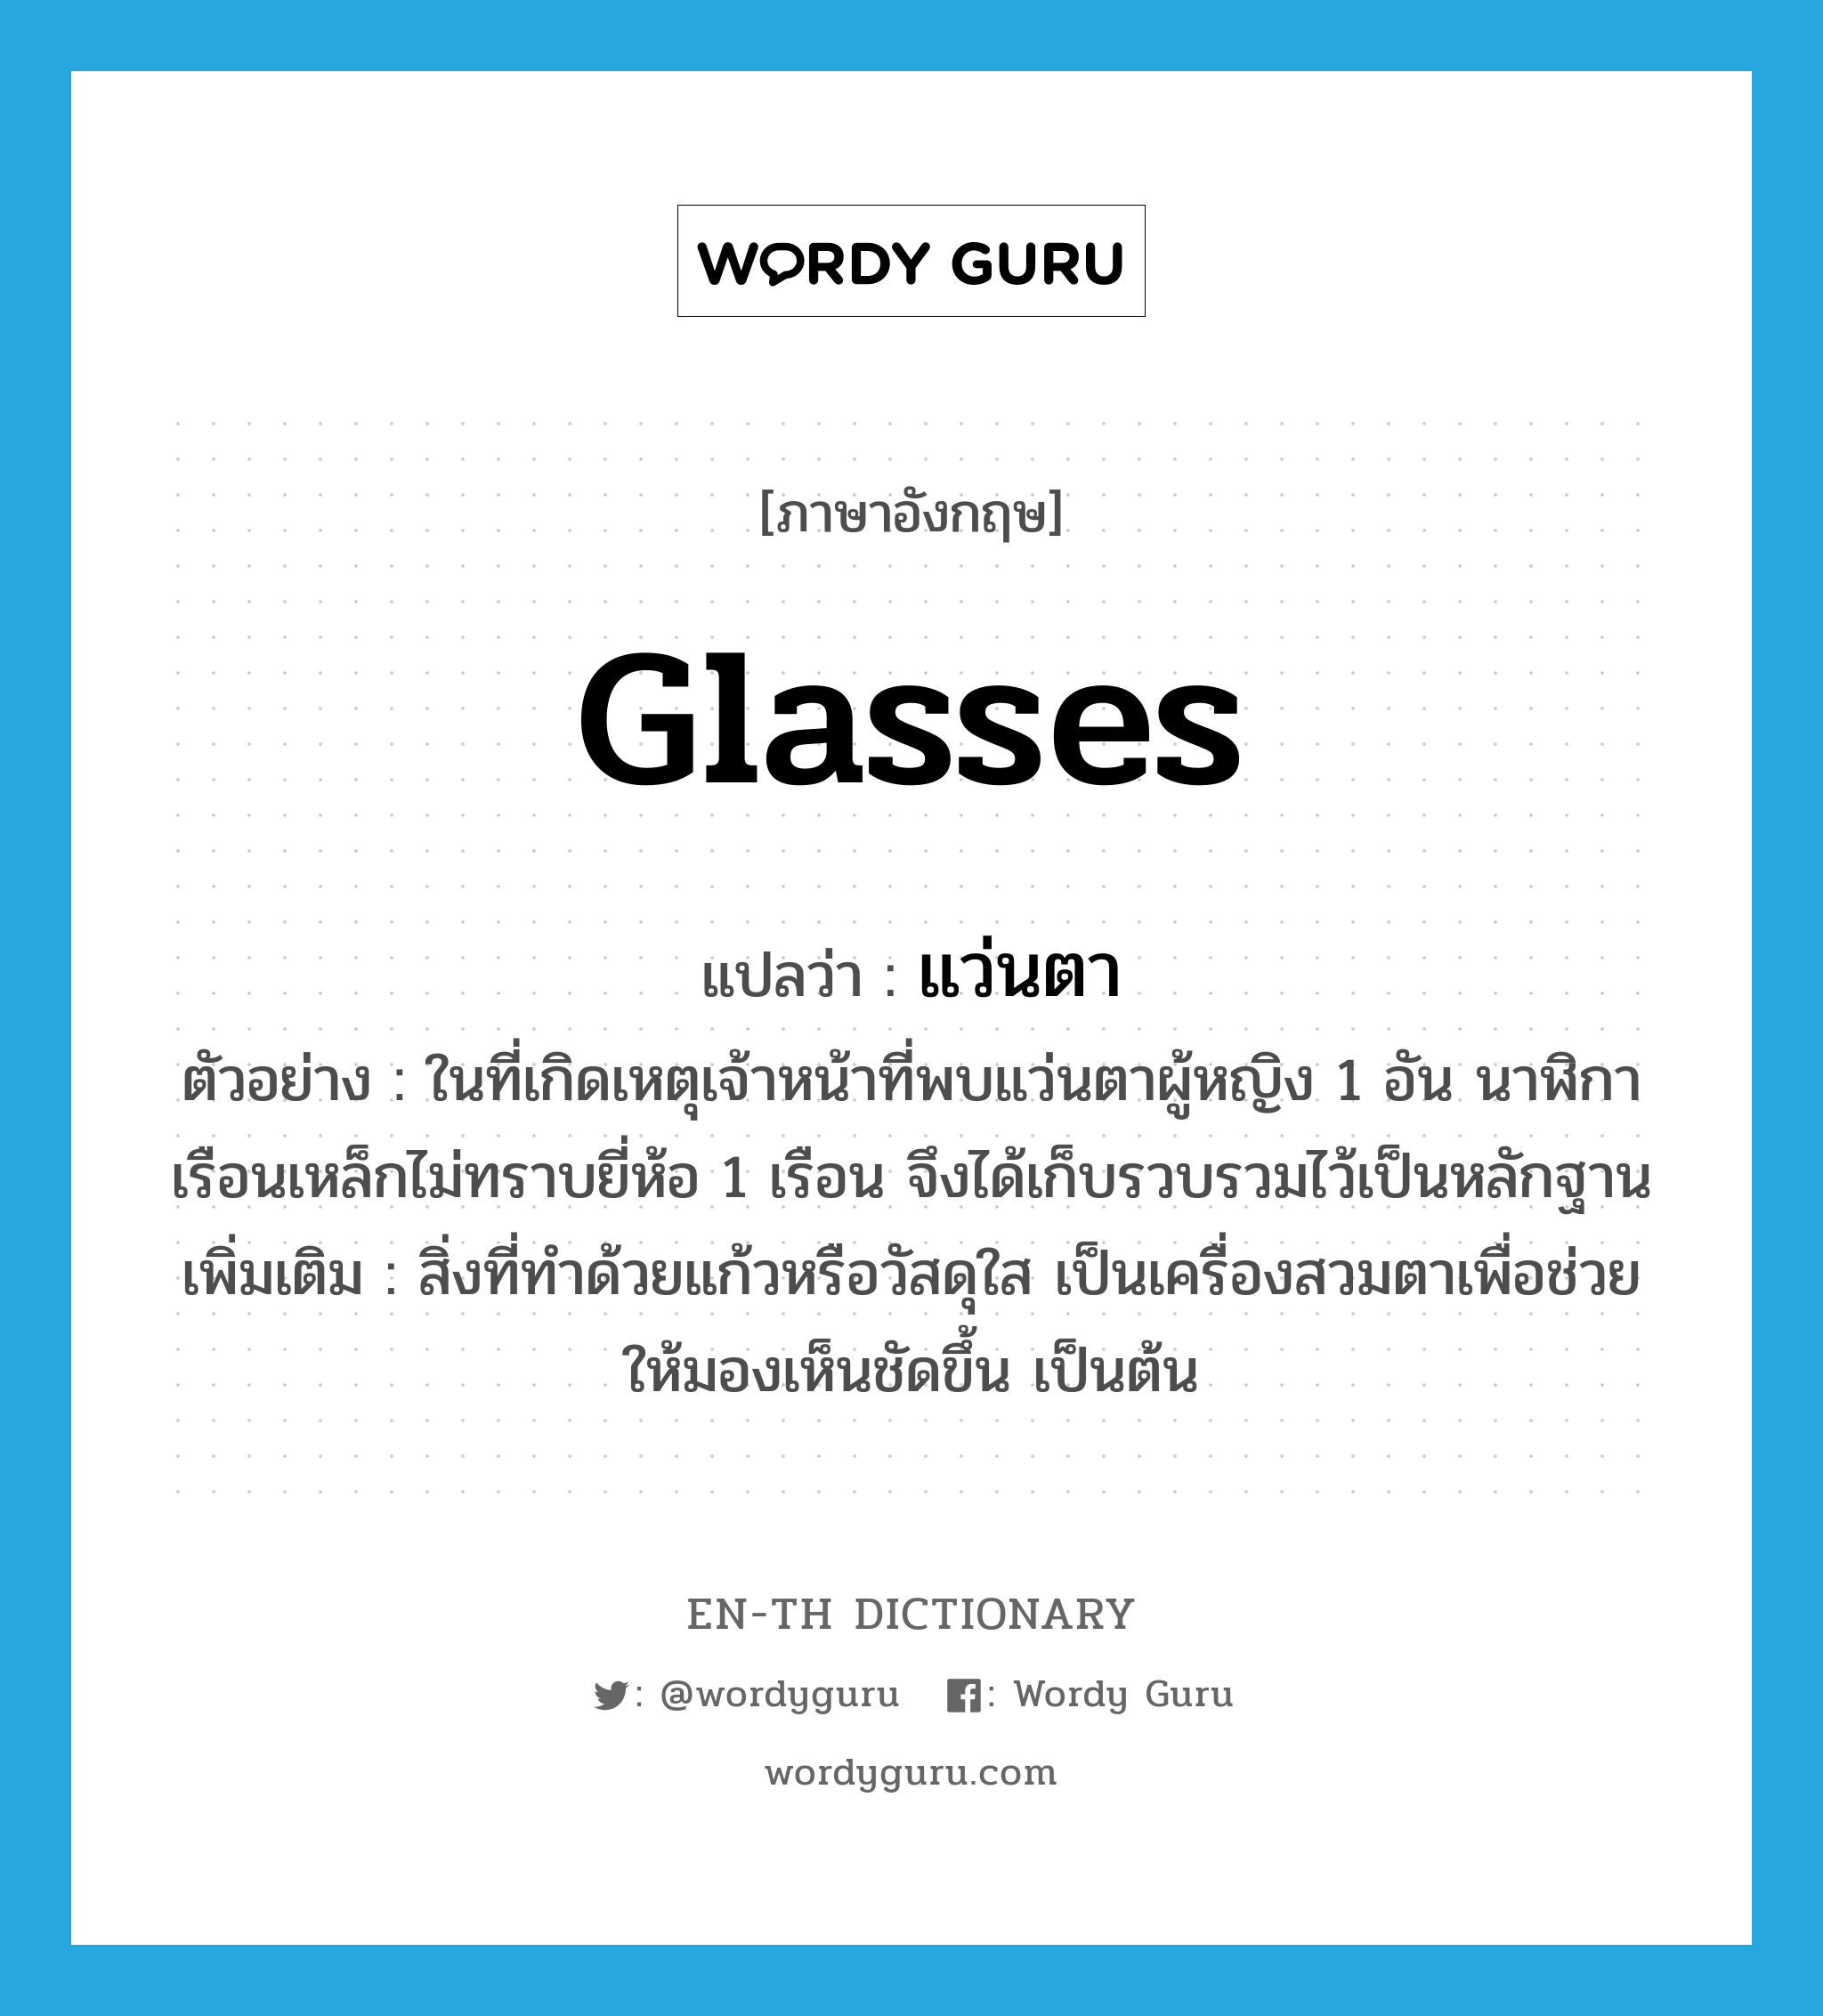 glasses แปลว่า?, คำศัพท์ภาษาอังกฤษ glasses แปลว่า แว่นตา ประเภท N ตัวอย่าง ในที่เกิดเหตุเจ้าหน้าที่พบแว่นตาผู้หญิง 1 อัน นาฬิกาเรือนเหล็กไม่ทราบยี่ห้อ 1 เรือน จึงได้เก็บรวบรวมไว้เป็นหลักฐาน เพิ่มเติม สิ่งที่ทำด้วยแก้วหรือวัสดุใส เป็นเครื่องสวมตาเพื่อช่วยให้มองเห็นชัดขึ้น เป็นต้น หมวด N